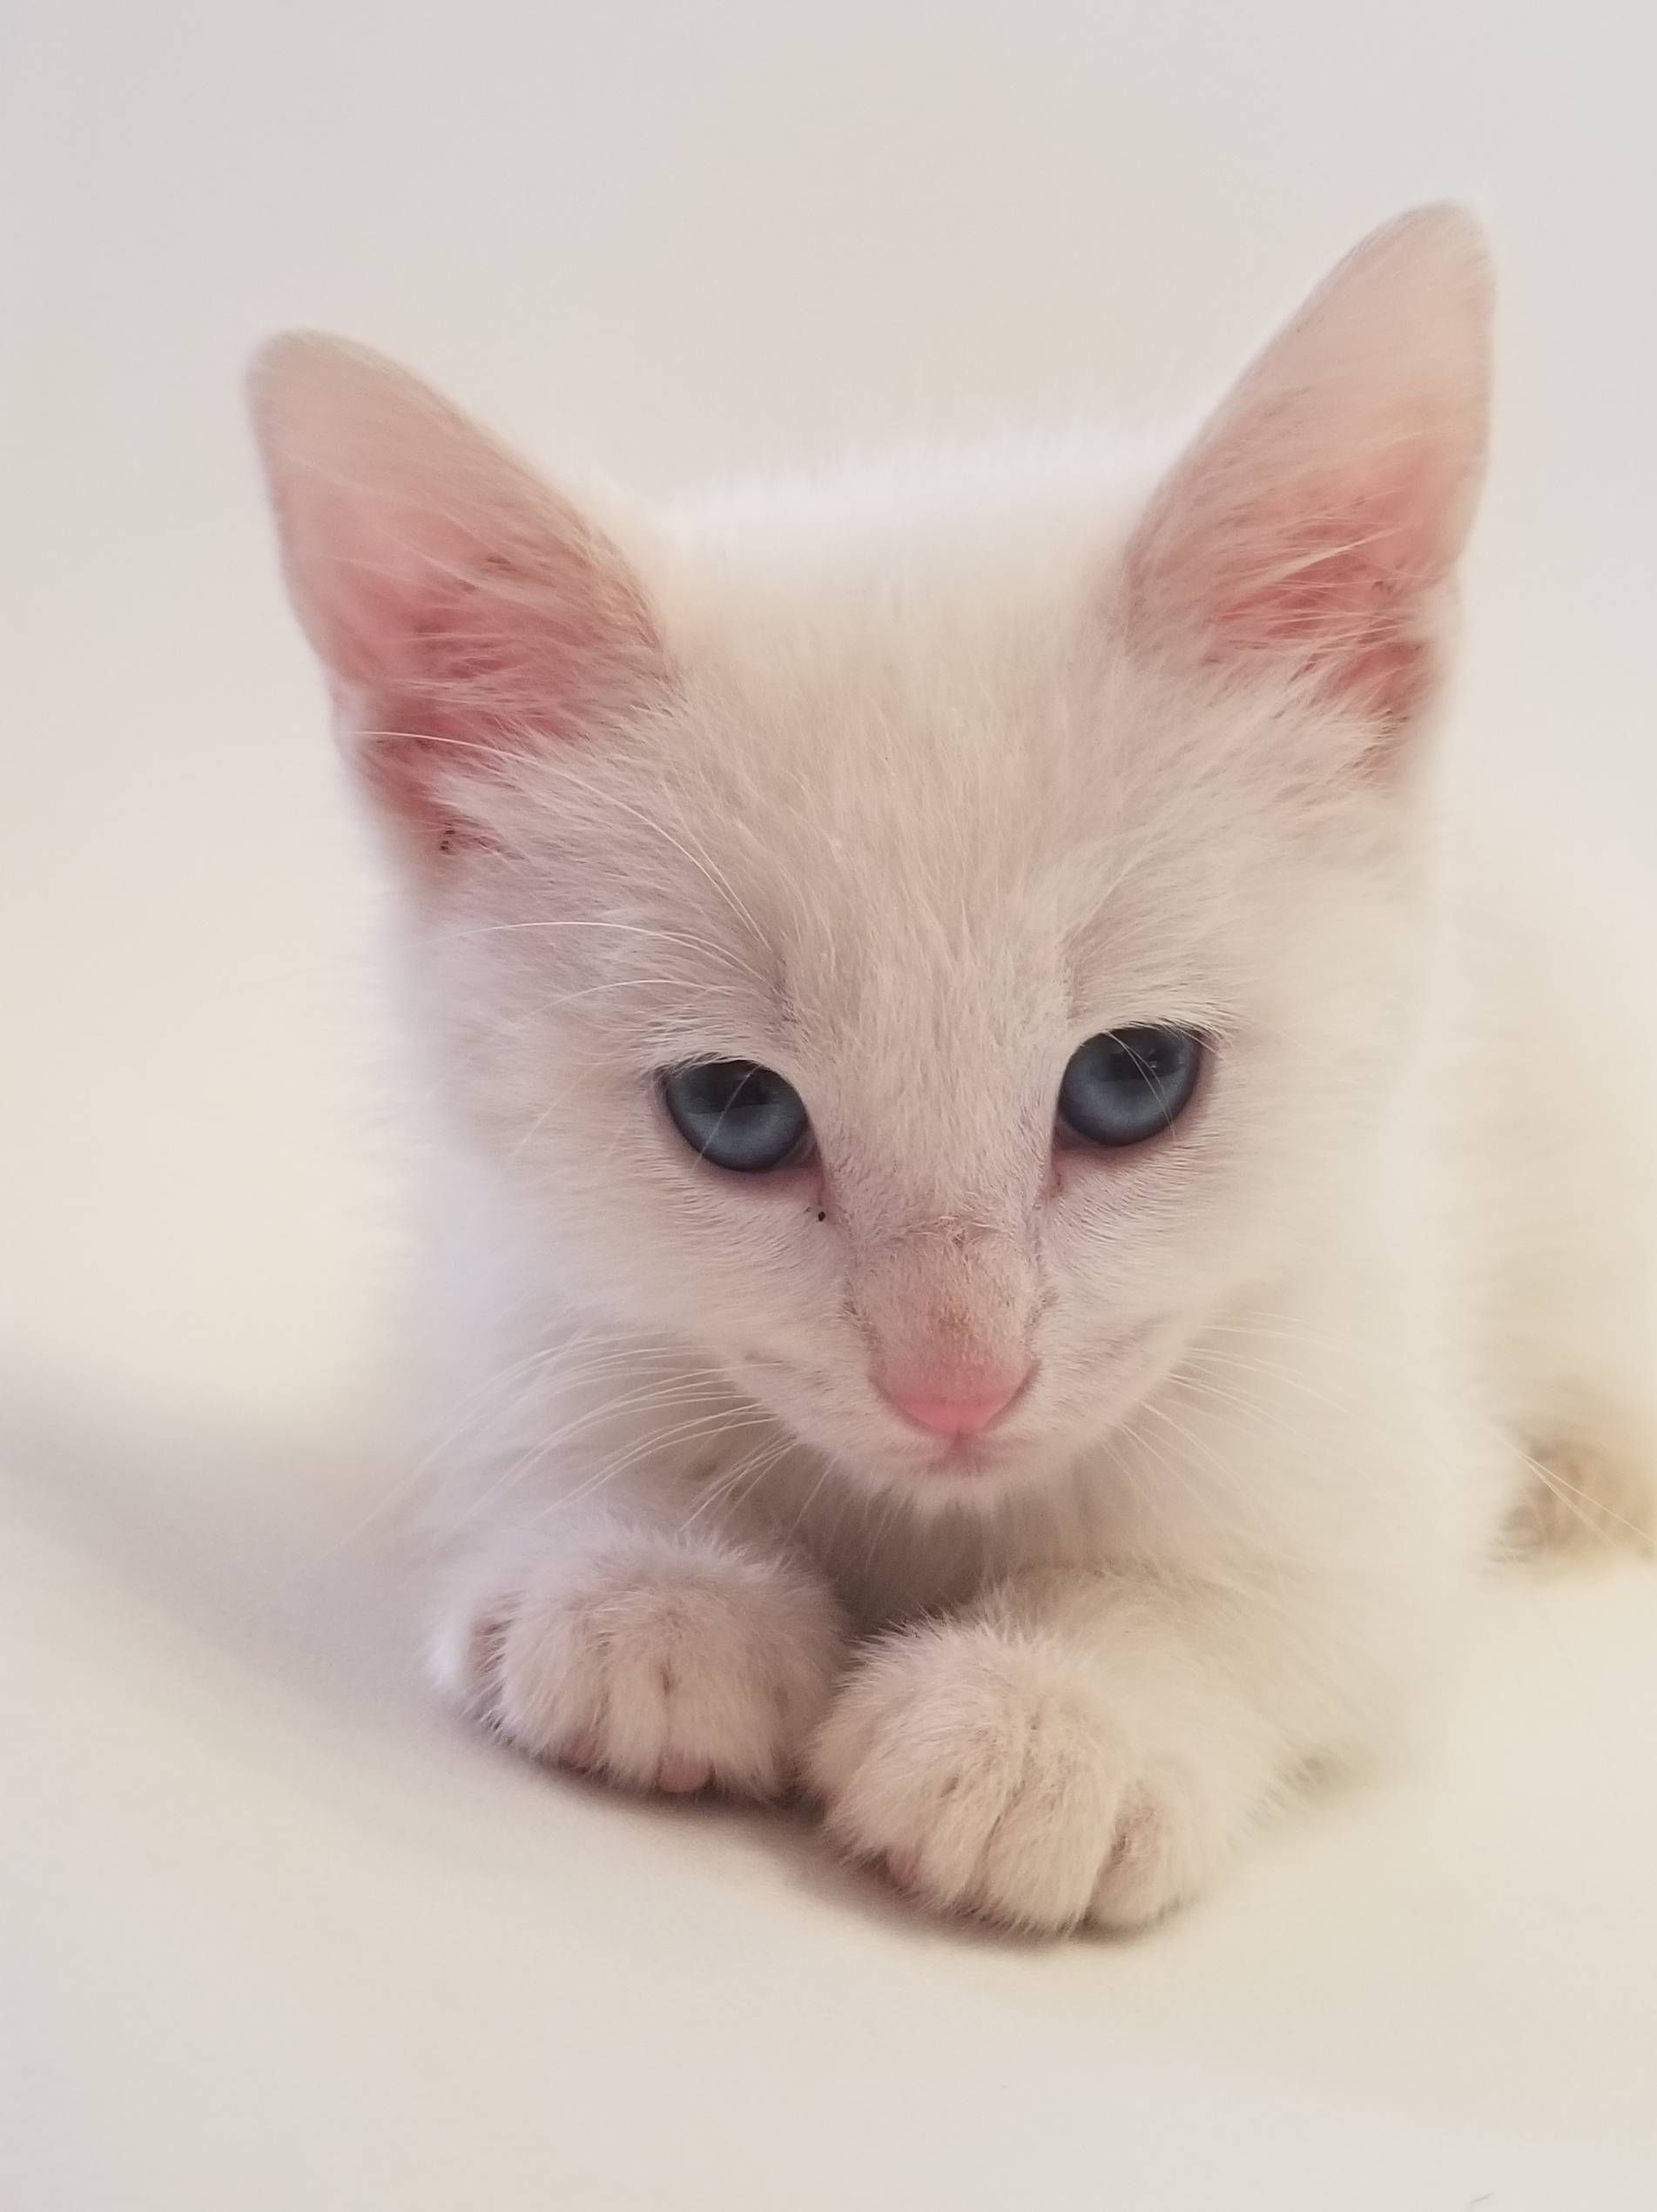 Reddit meet our kitty Arthas! http://ift.tt/2EMA2sw | Awww ...